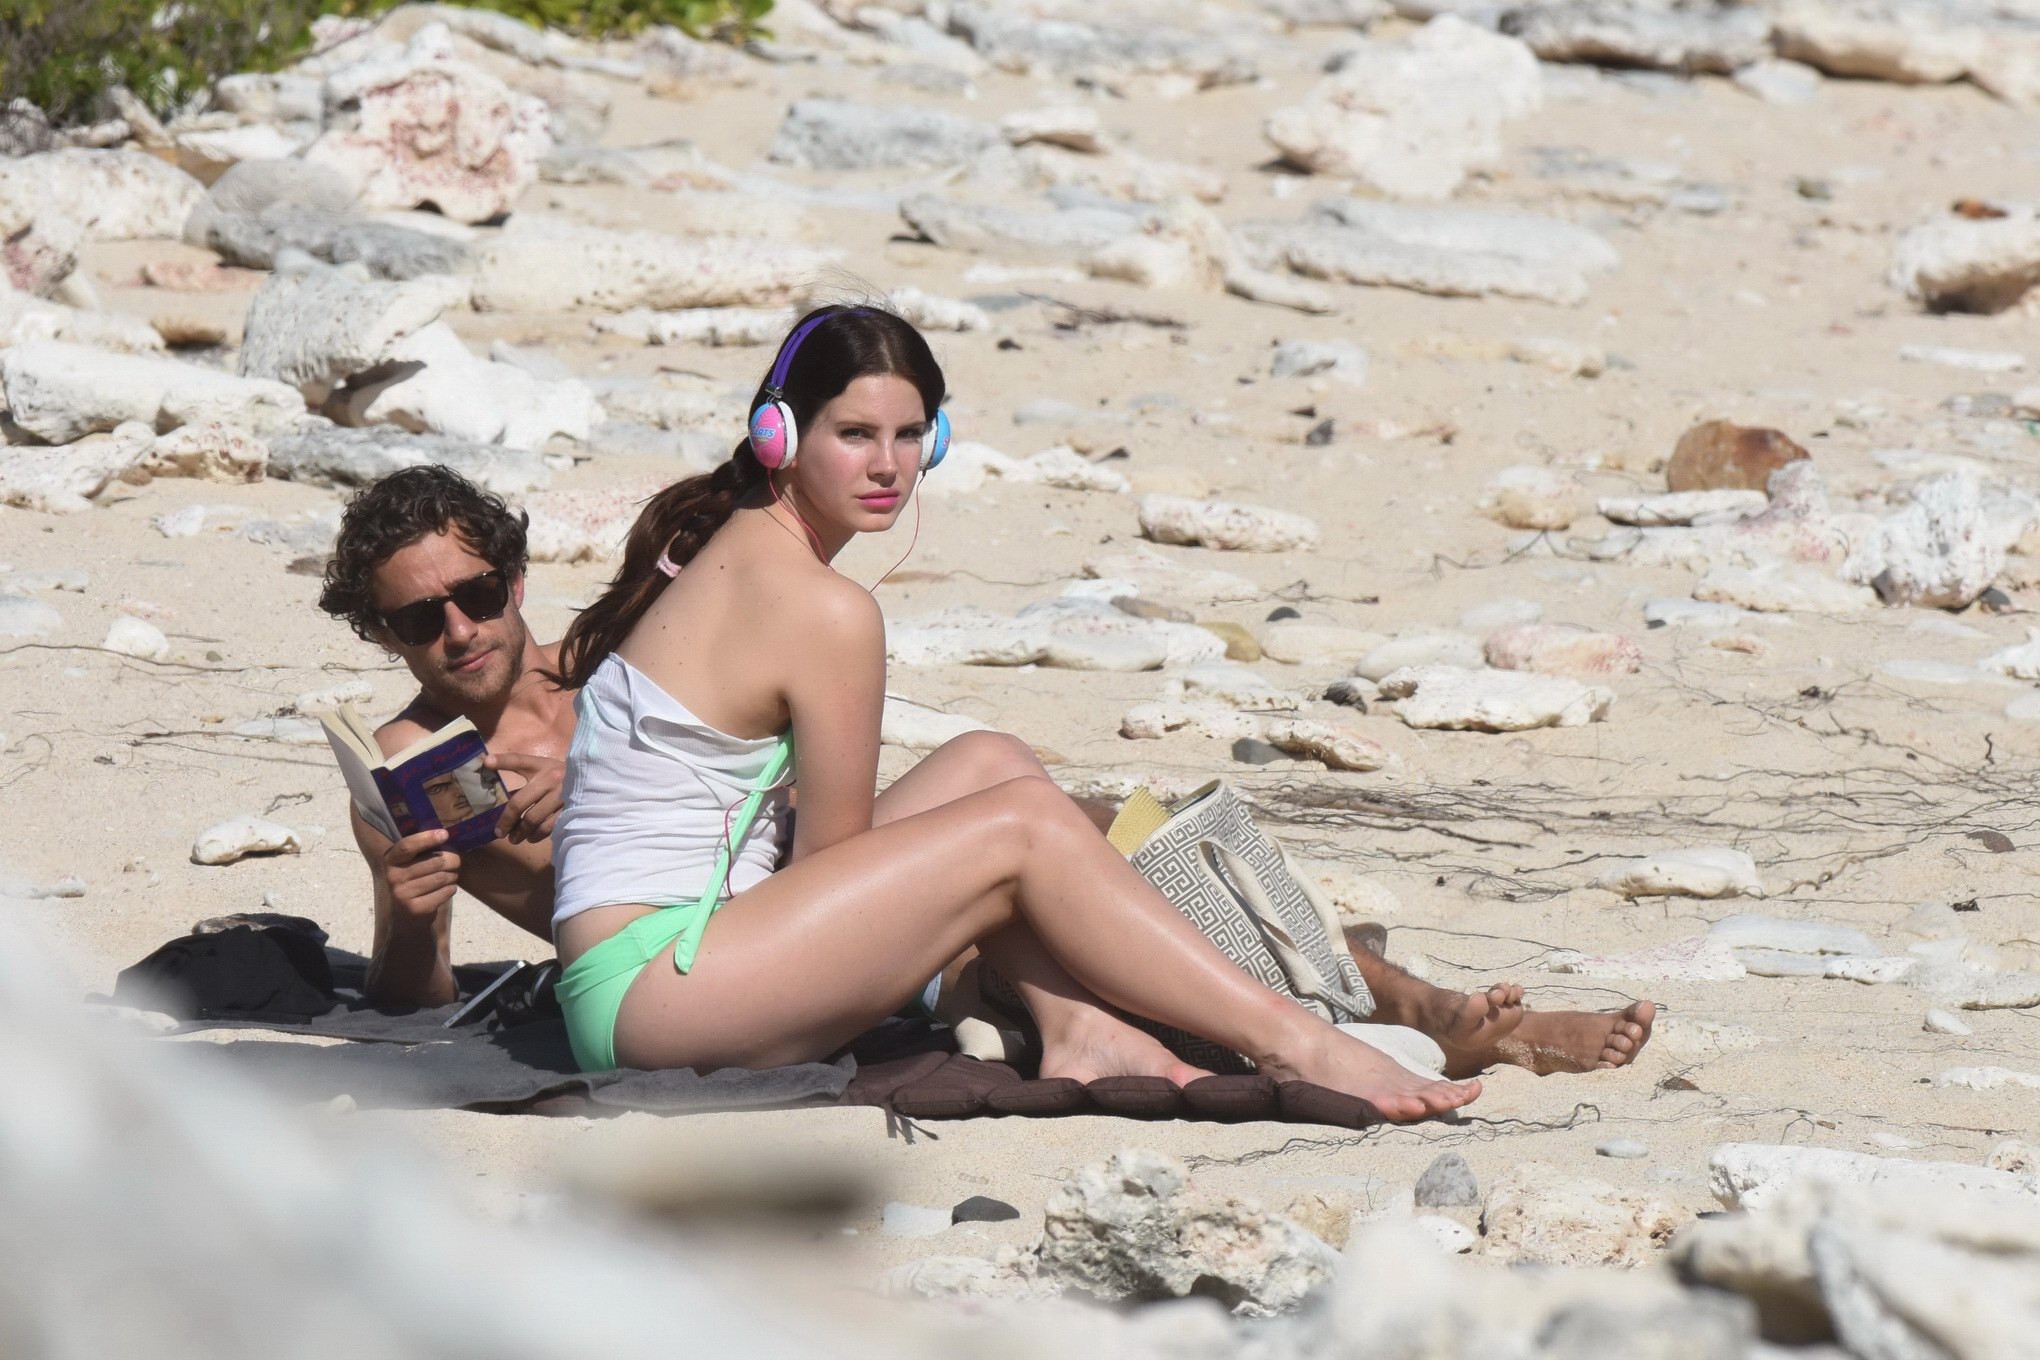 Lana Del Rey wearing green bikini at the beach in StBarts #75176866